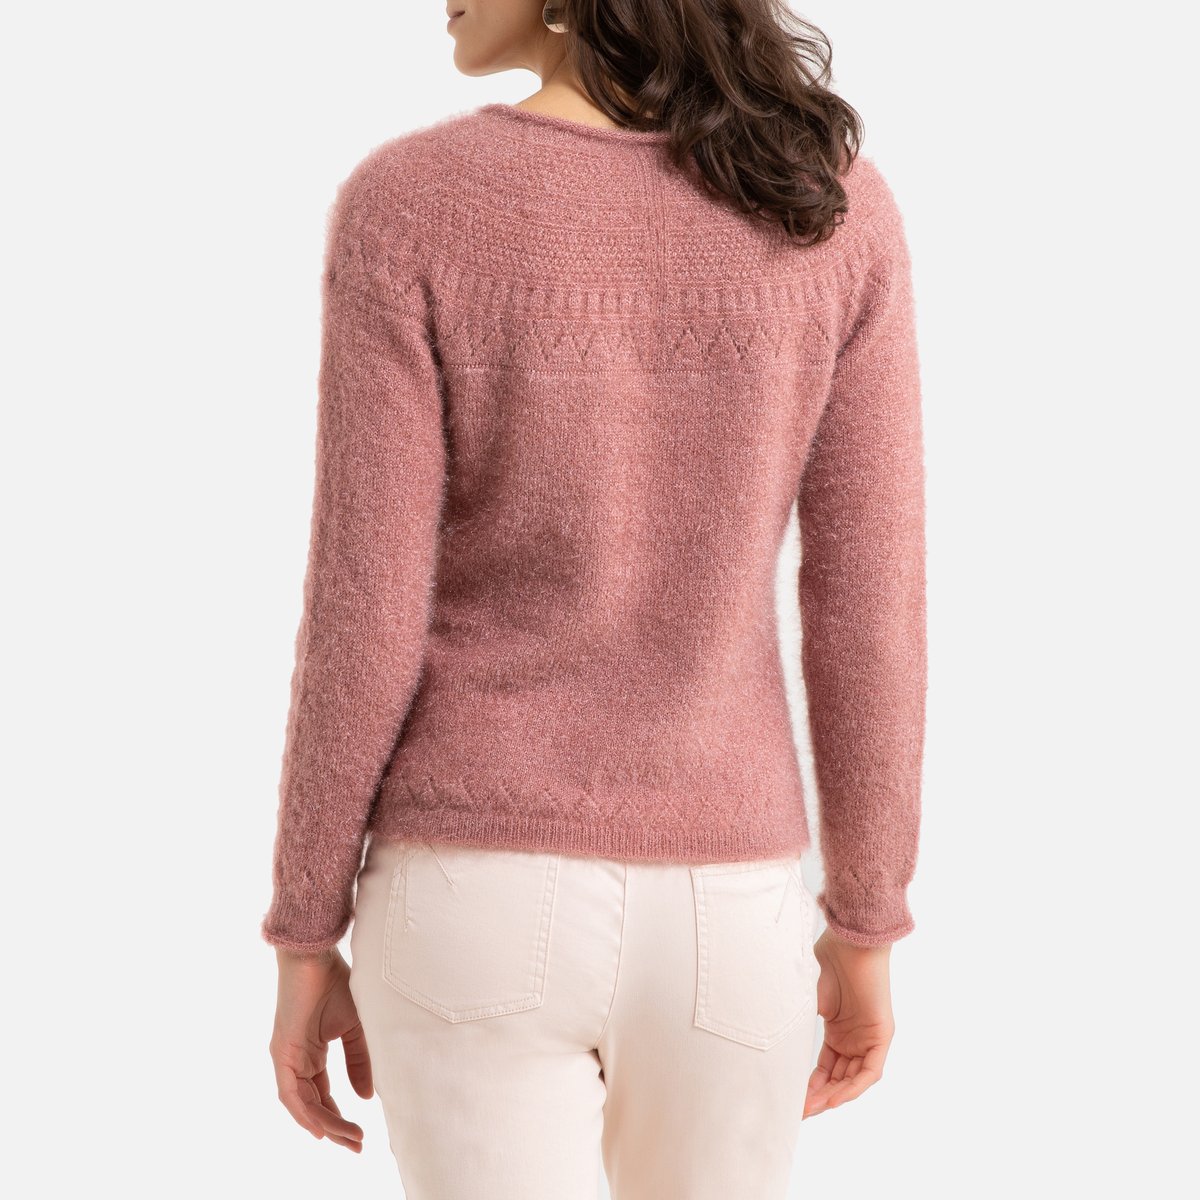 Пуловер La Redoute С V-образным вырезом из плотного трикотажа 50/52 (FR) - 56/58 (RUS) розовый, размер 50/52 (FR) - 56/58 (RUS) С V-образным вырезом из плотного трикотажа 50/52 (FR) - 56/58 (RUS) розовый - фото 4